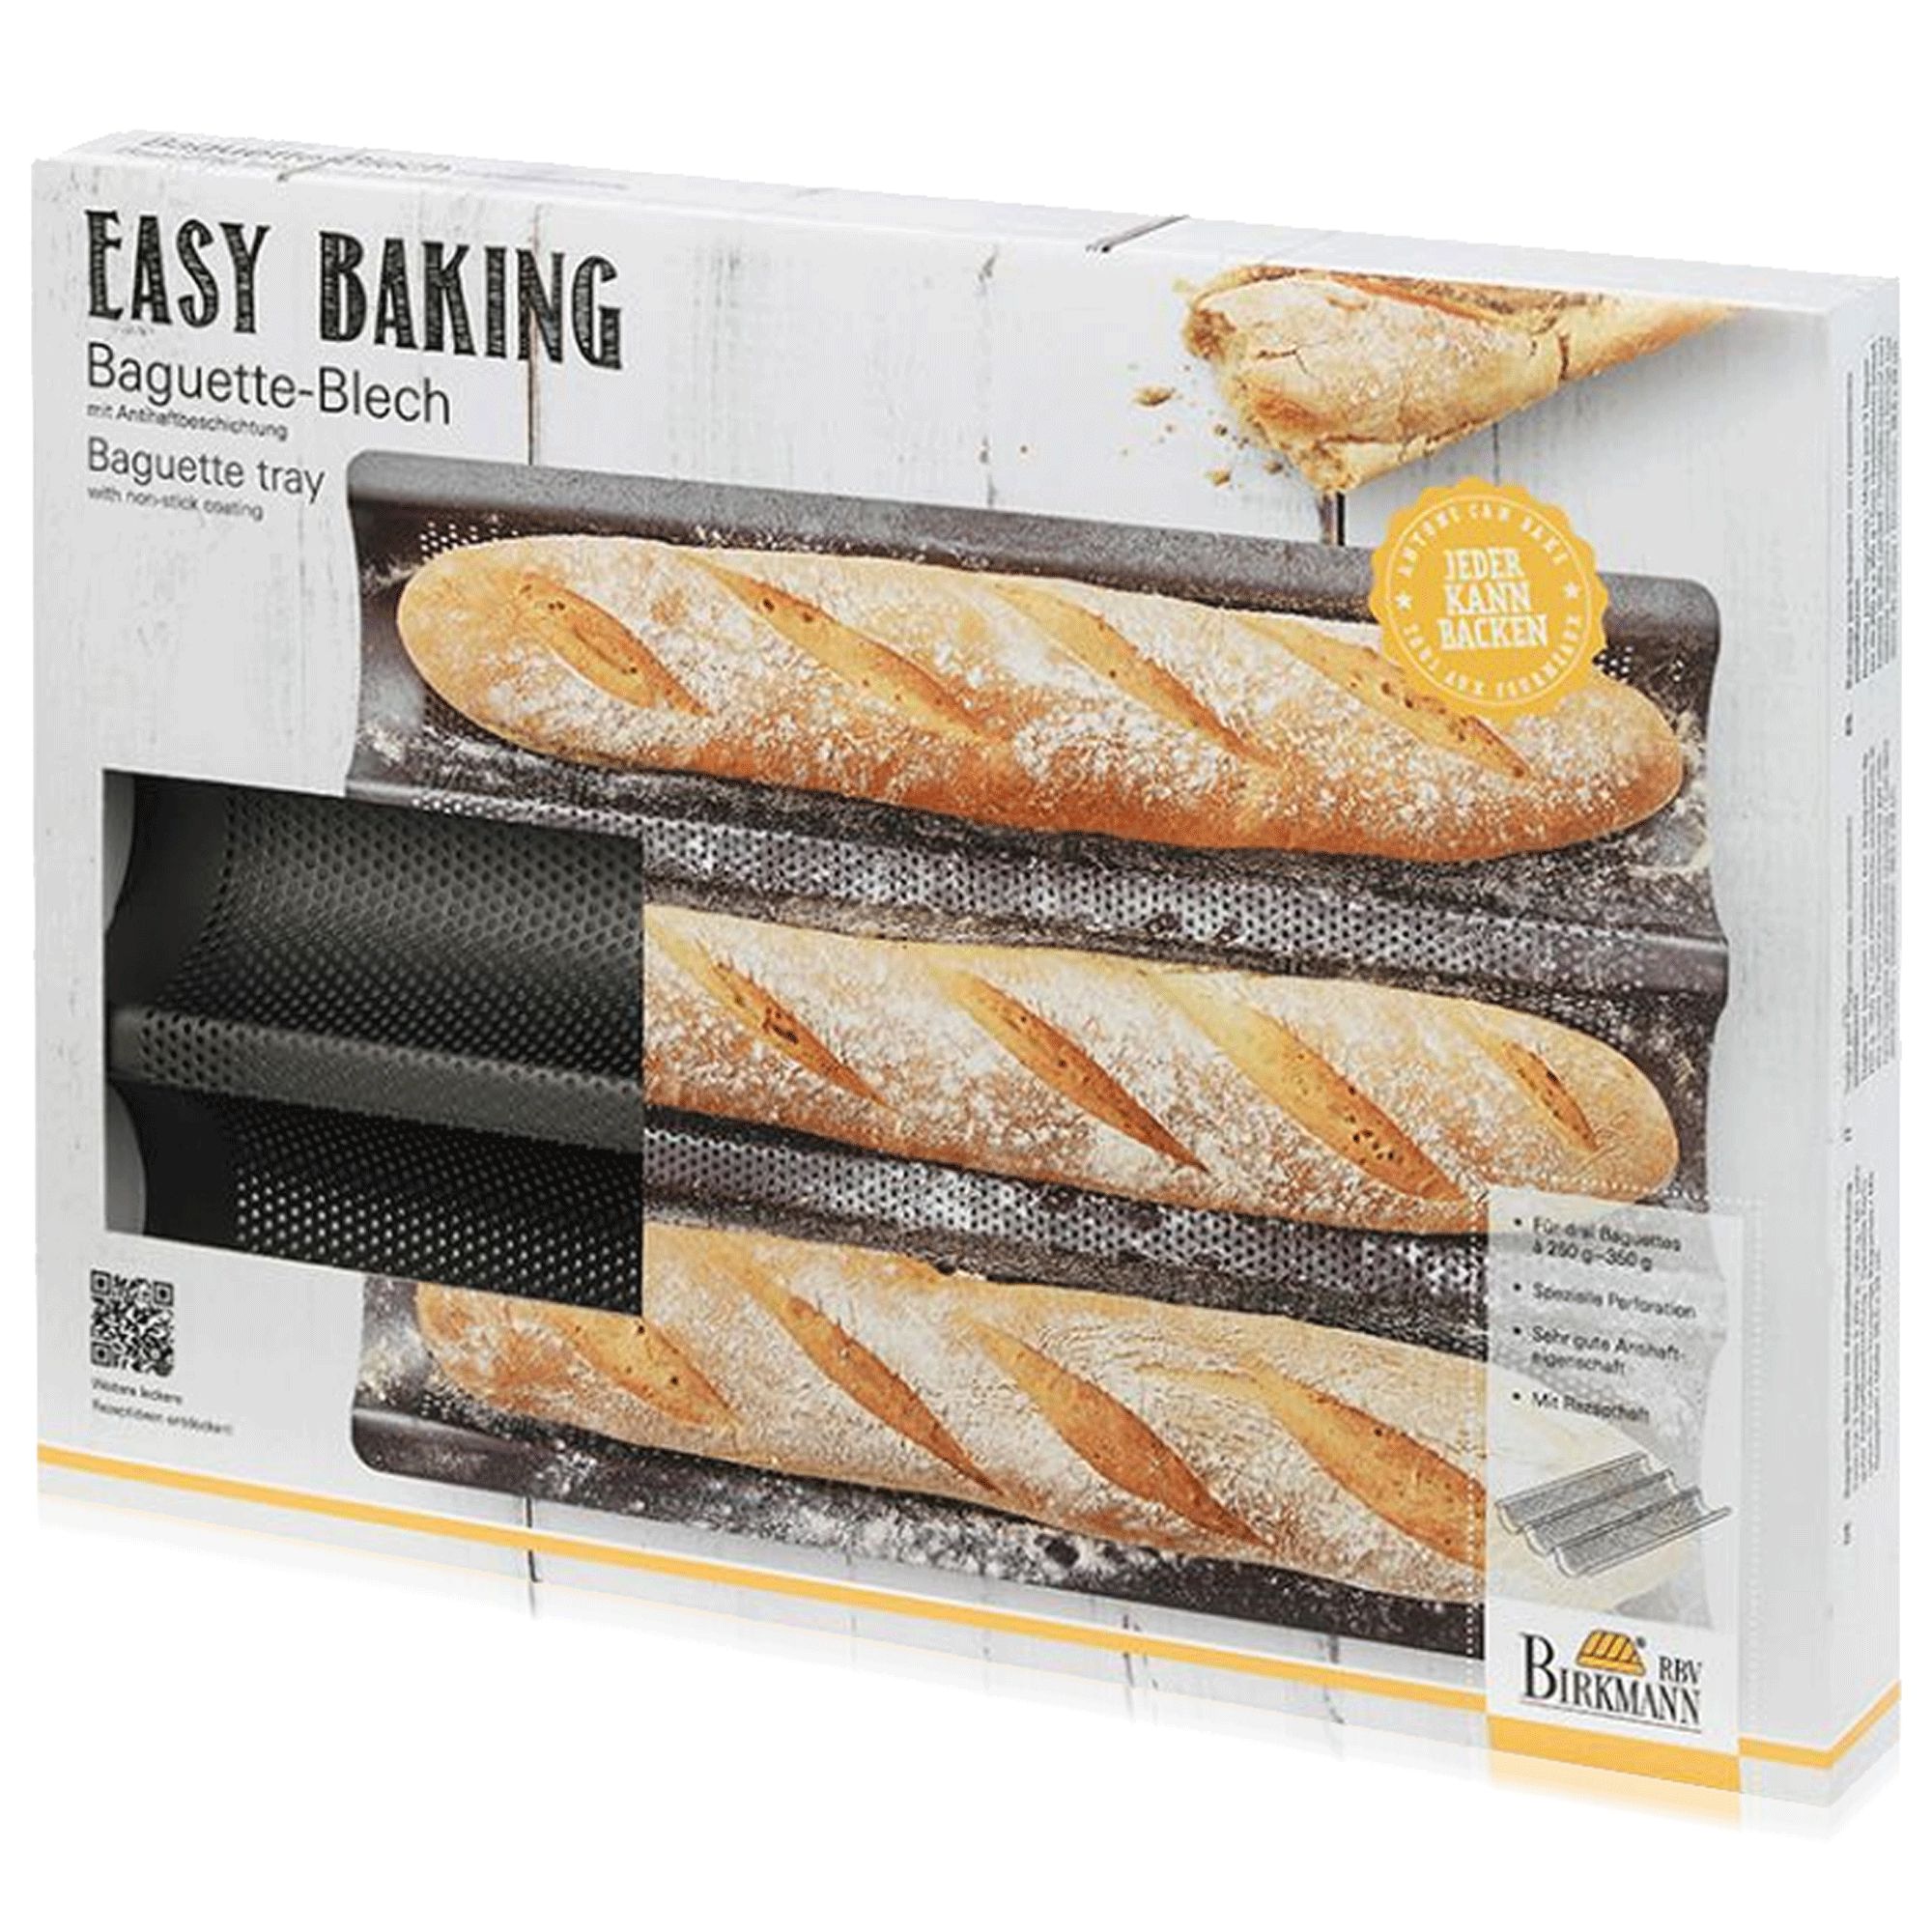 RBV Birkmann - Baguette-sheet- Easy Baking